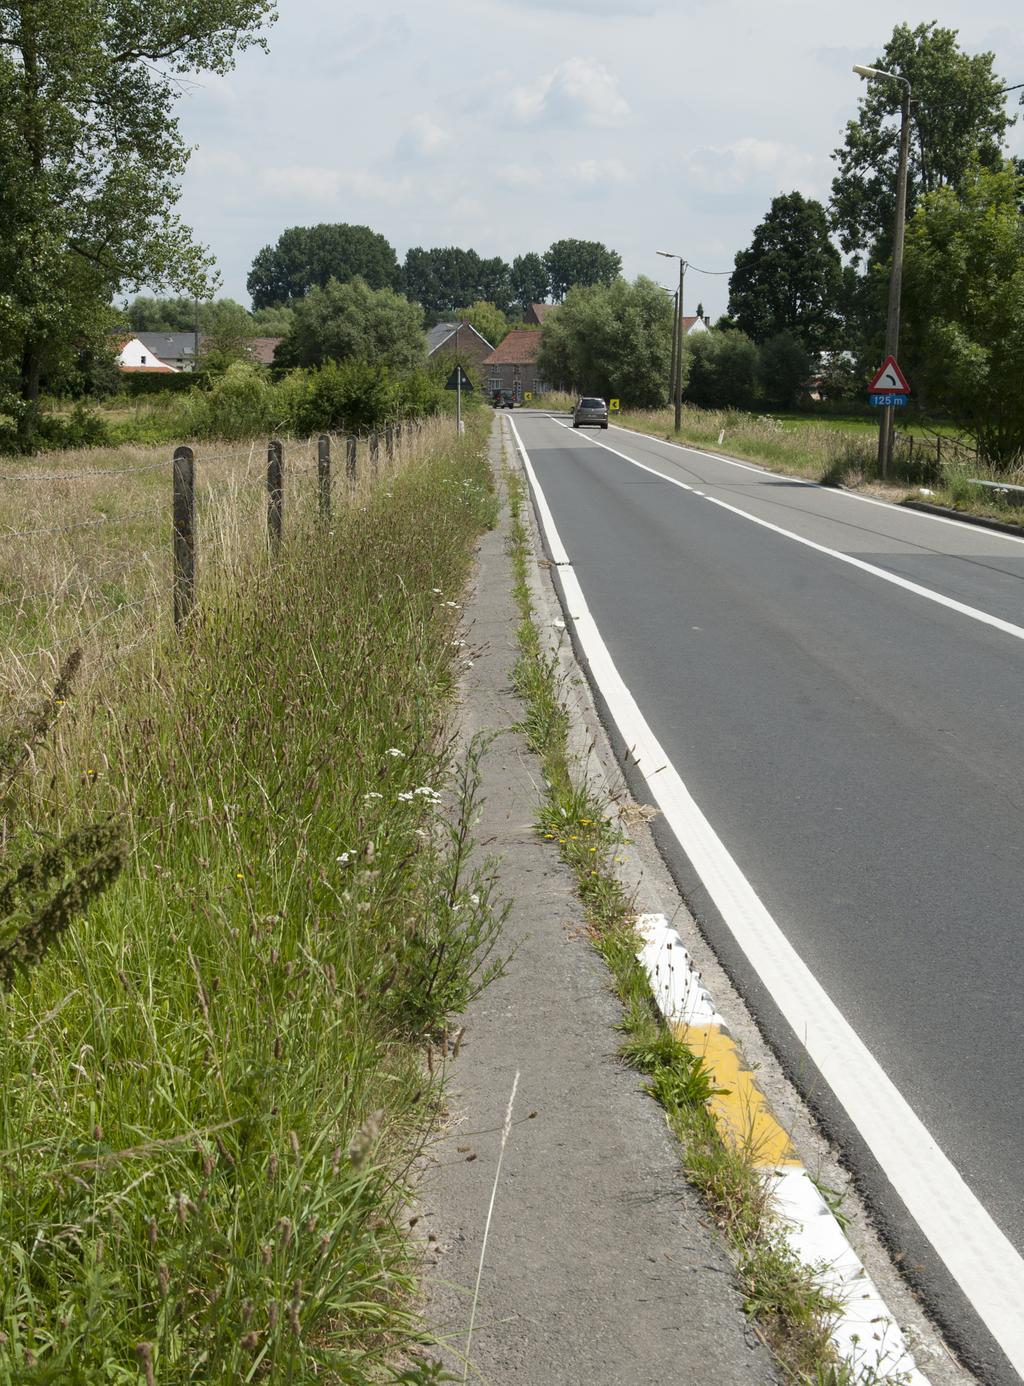 Over bijna de hele afstand rijden fietsers gemengd met het autoverkeer.